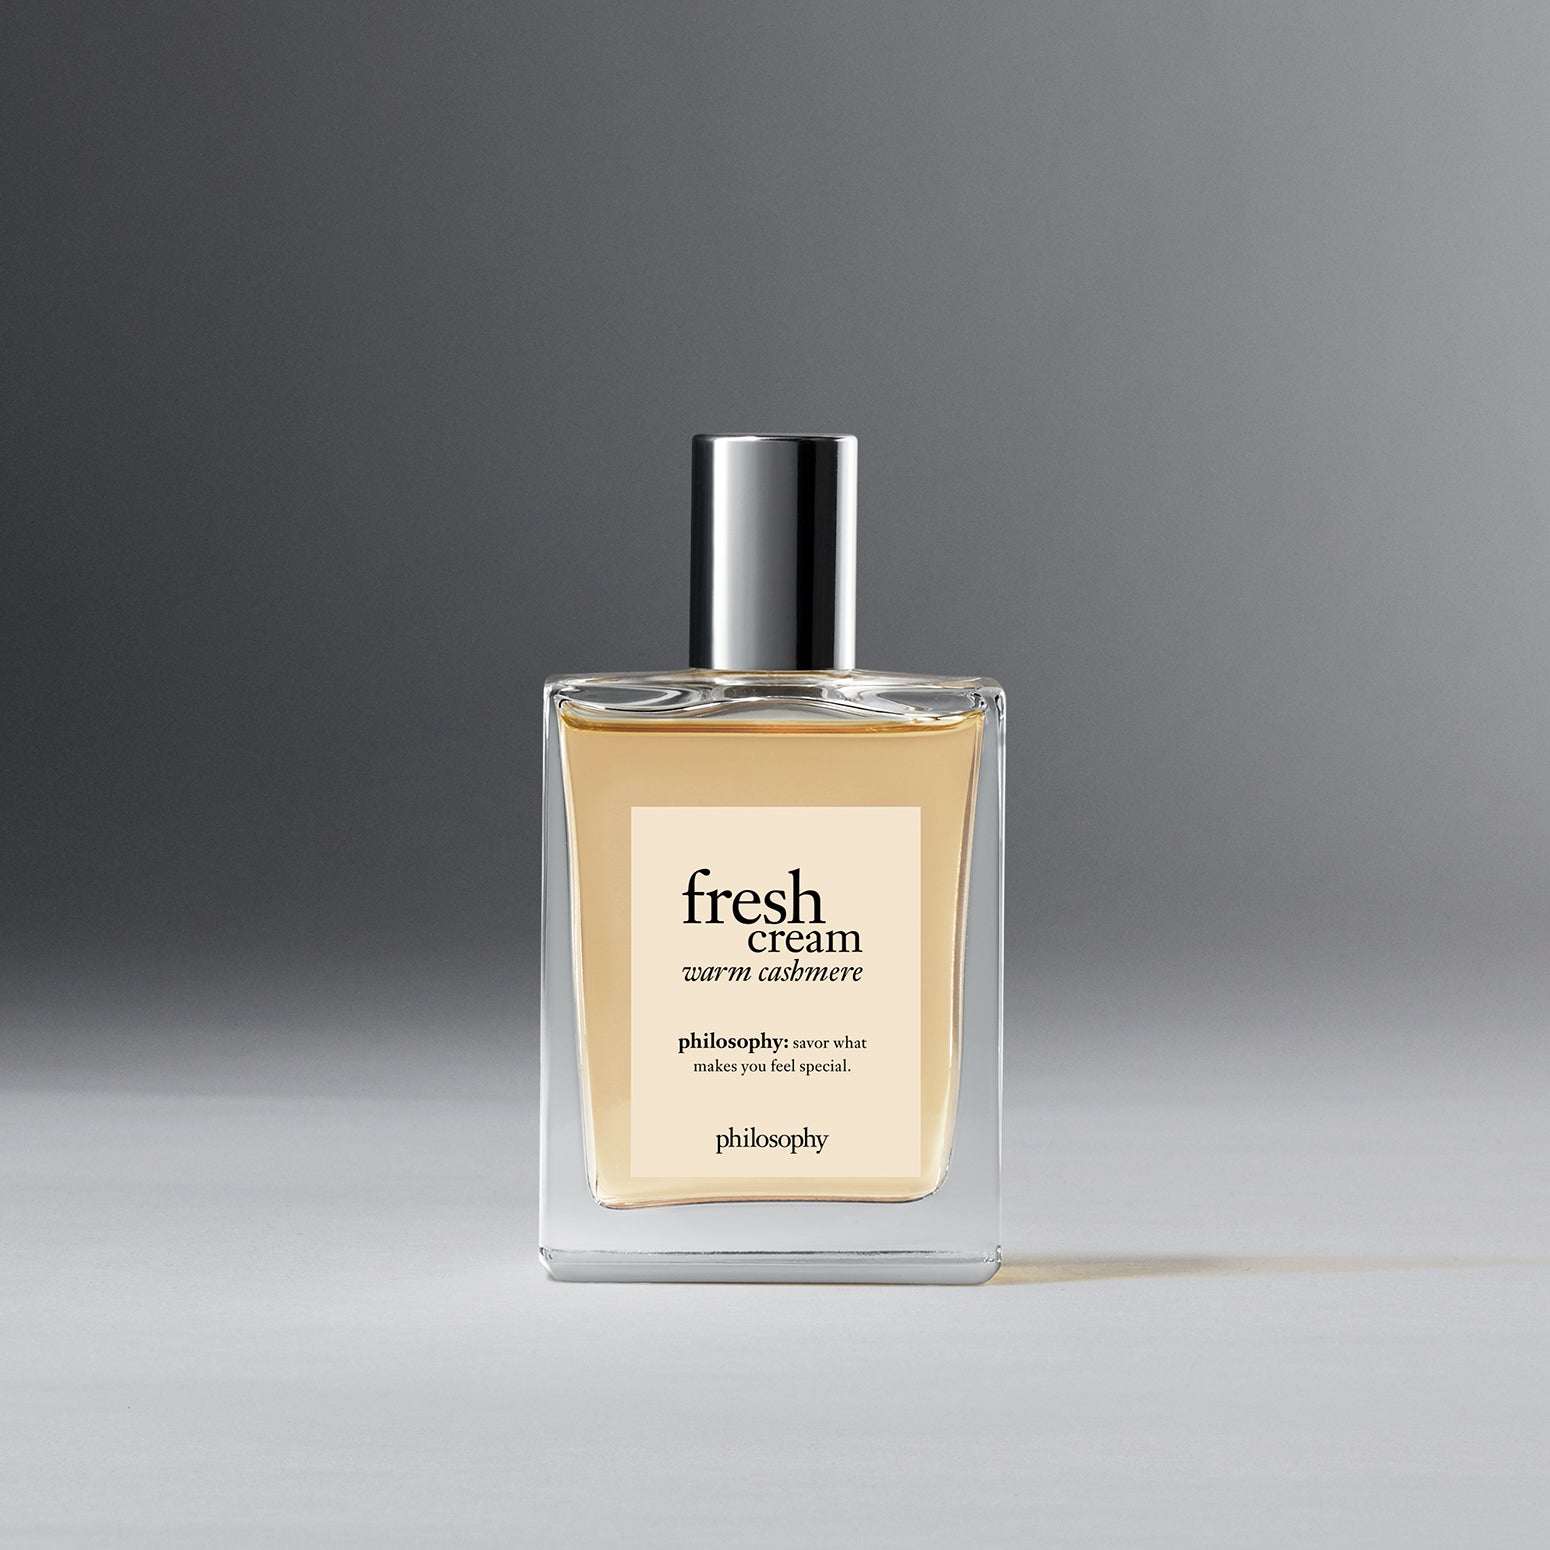 Cashmere Vanilla - Perfume Oil